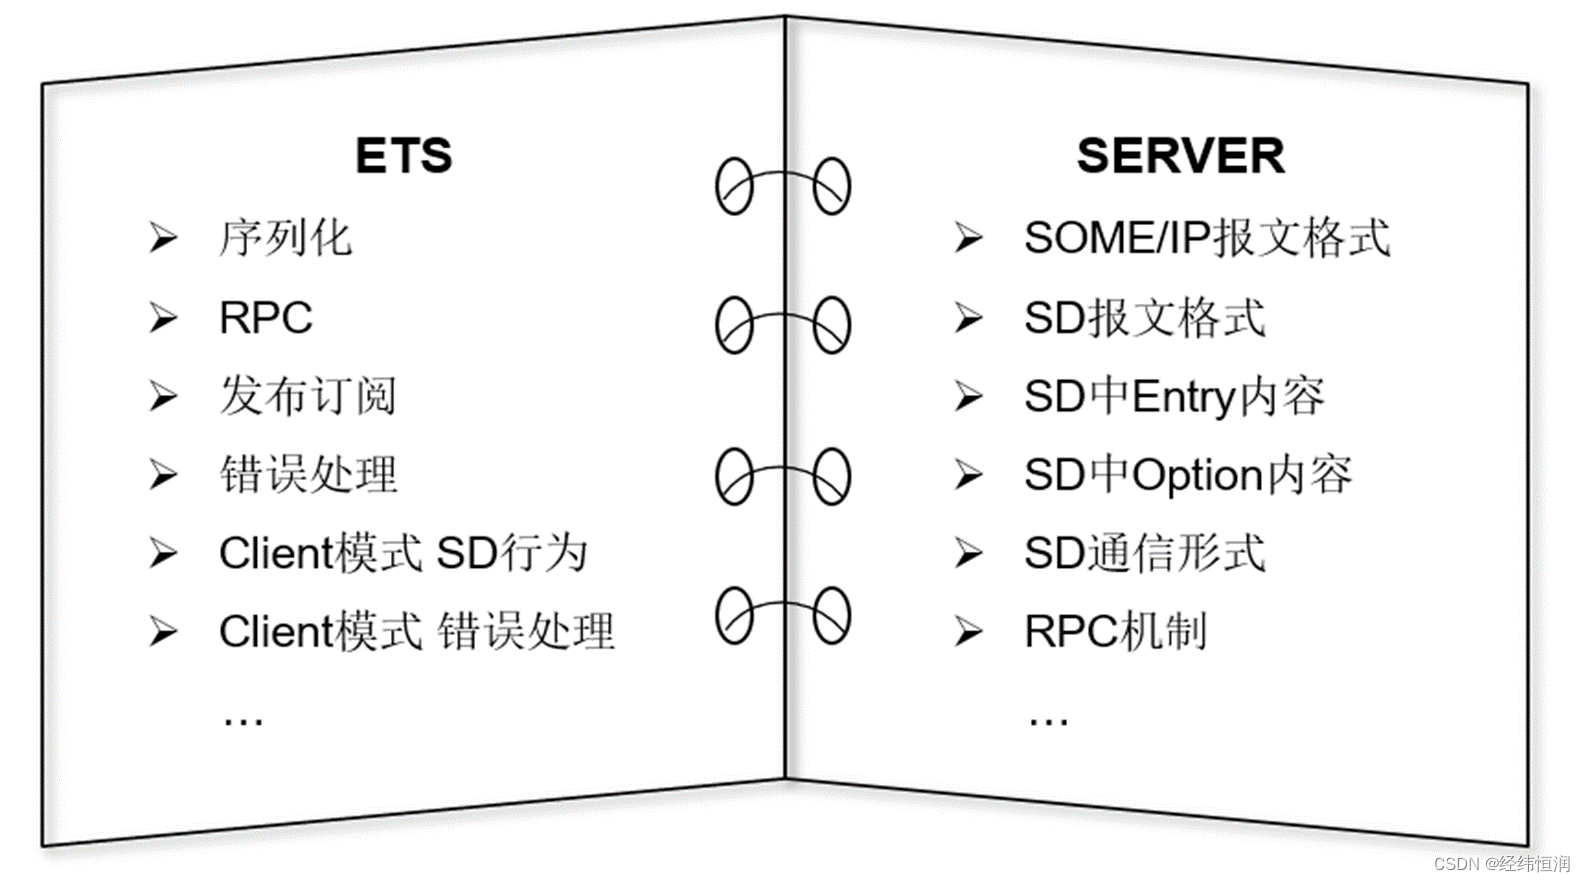 图7 SOME/IP测试分类及内容